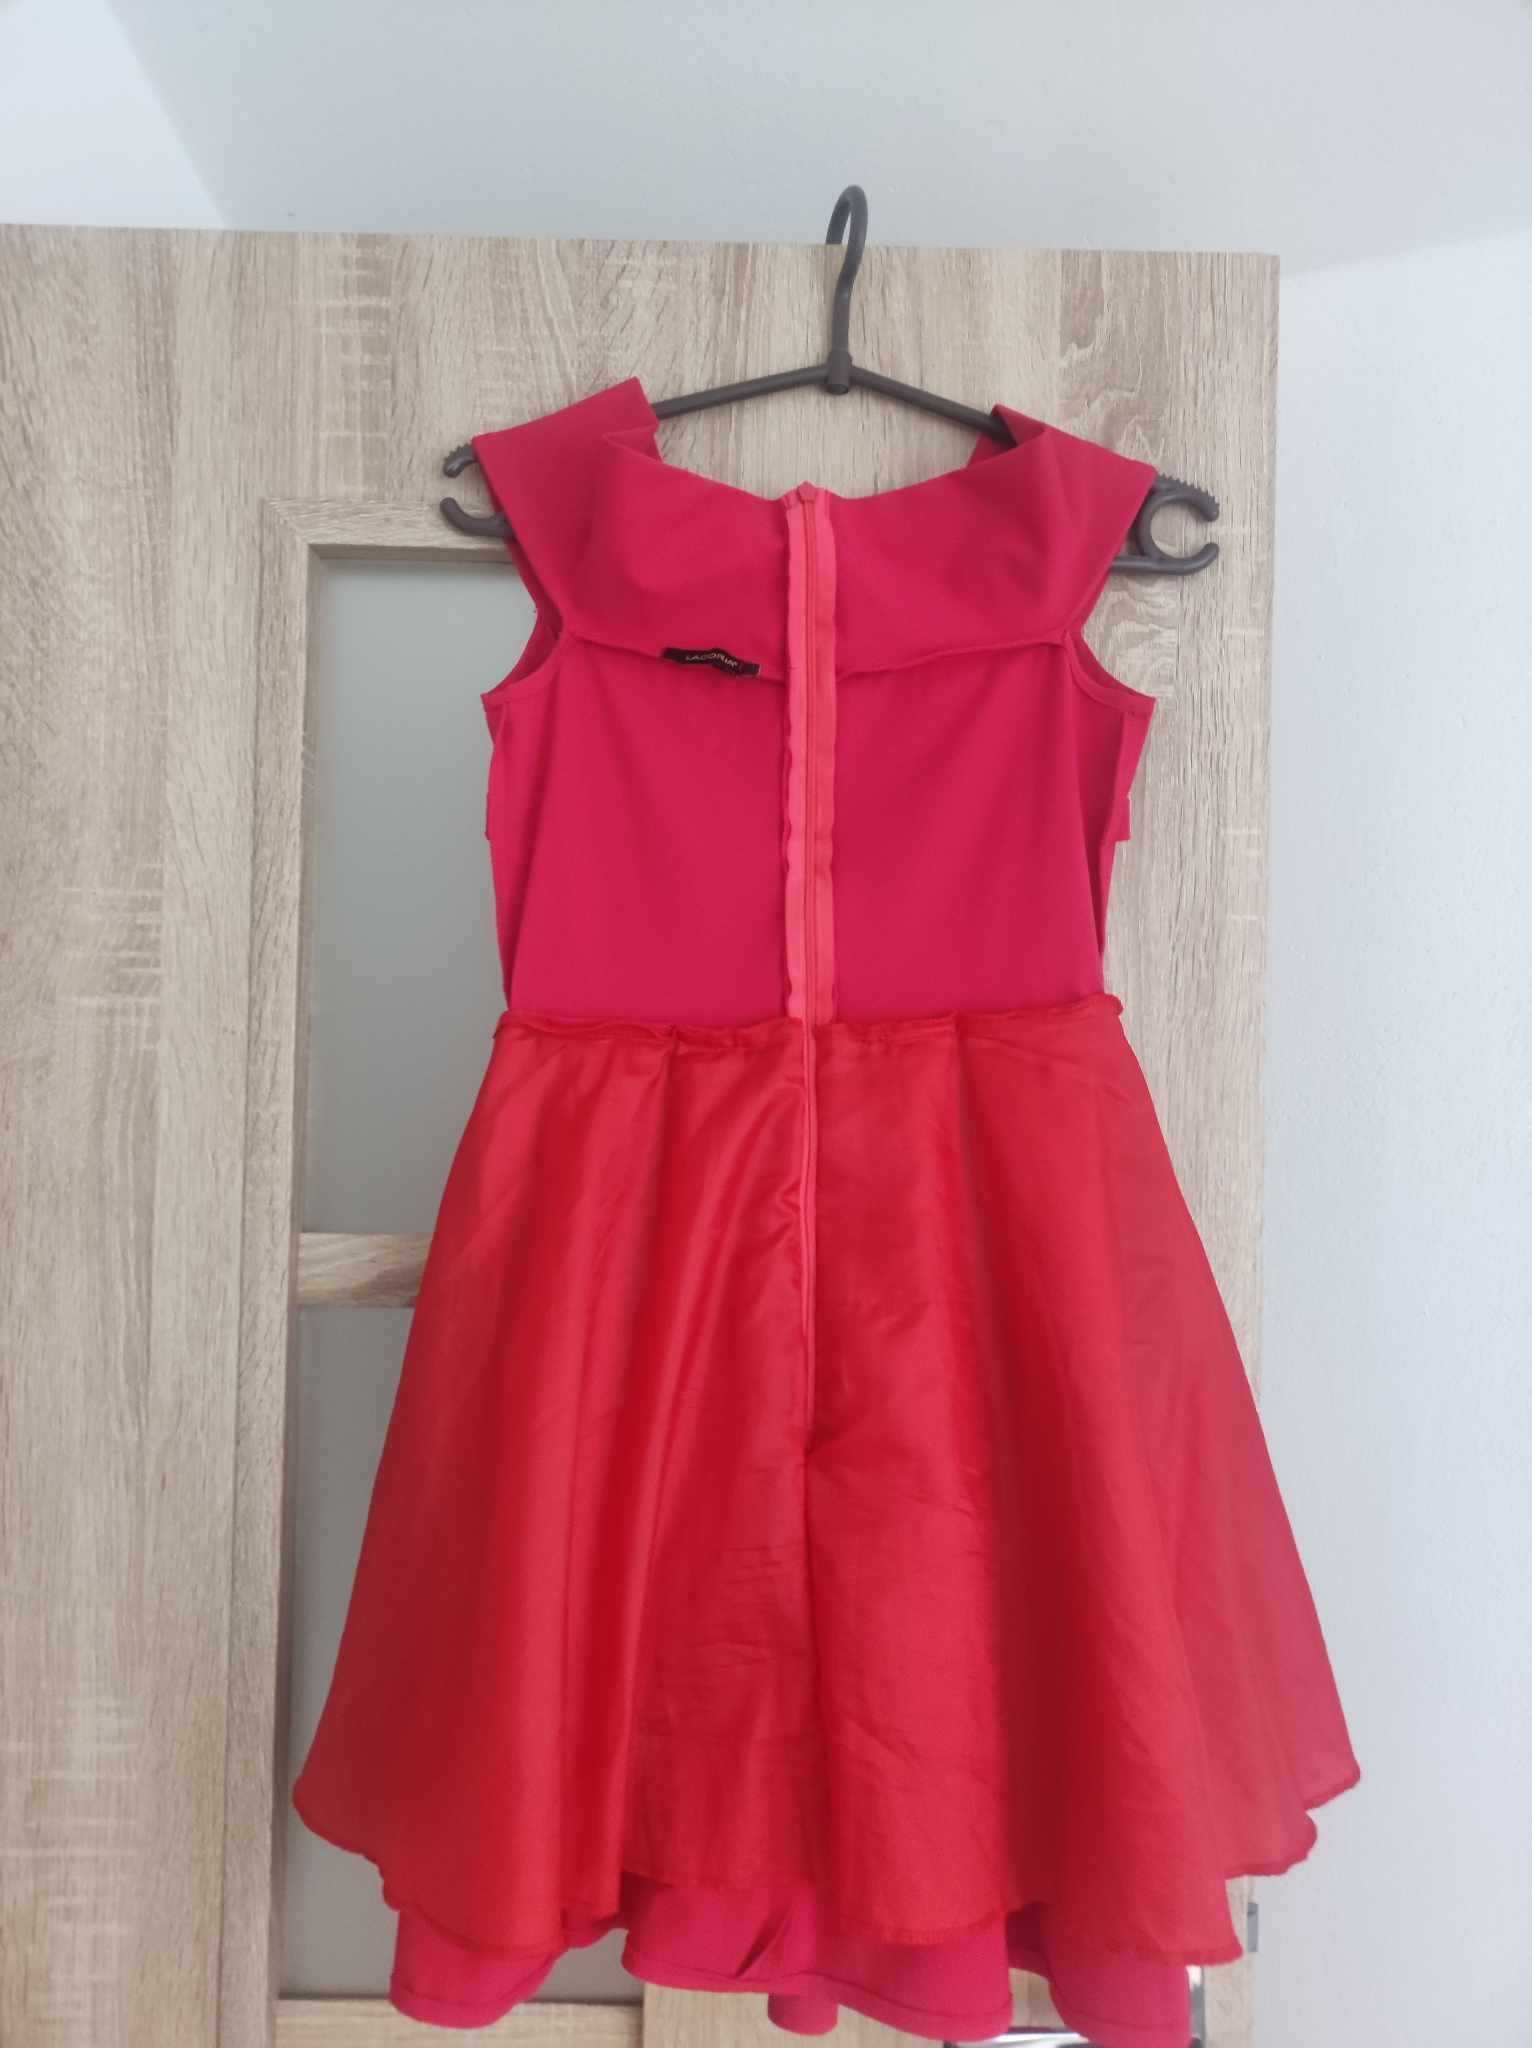 Czerwona sukienka wesele rozmiar 38